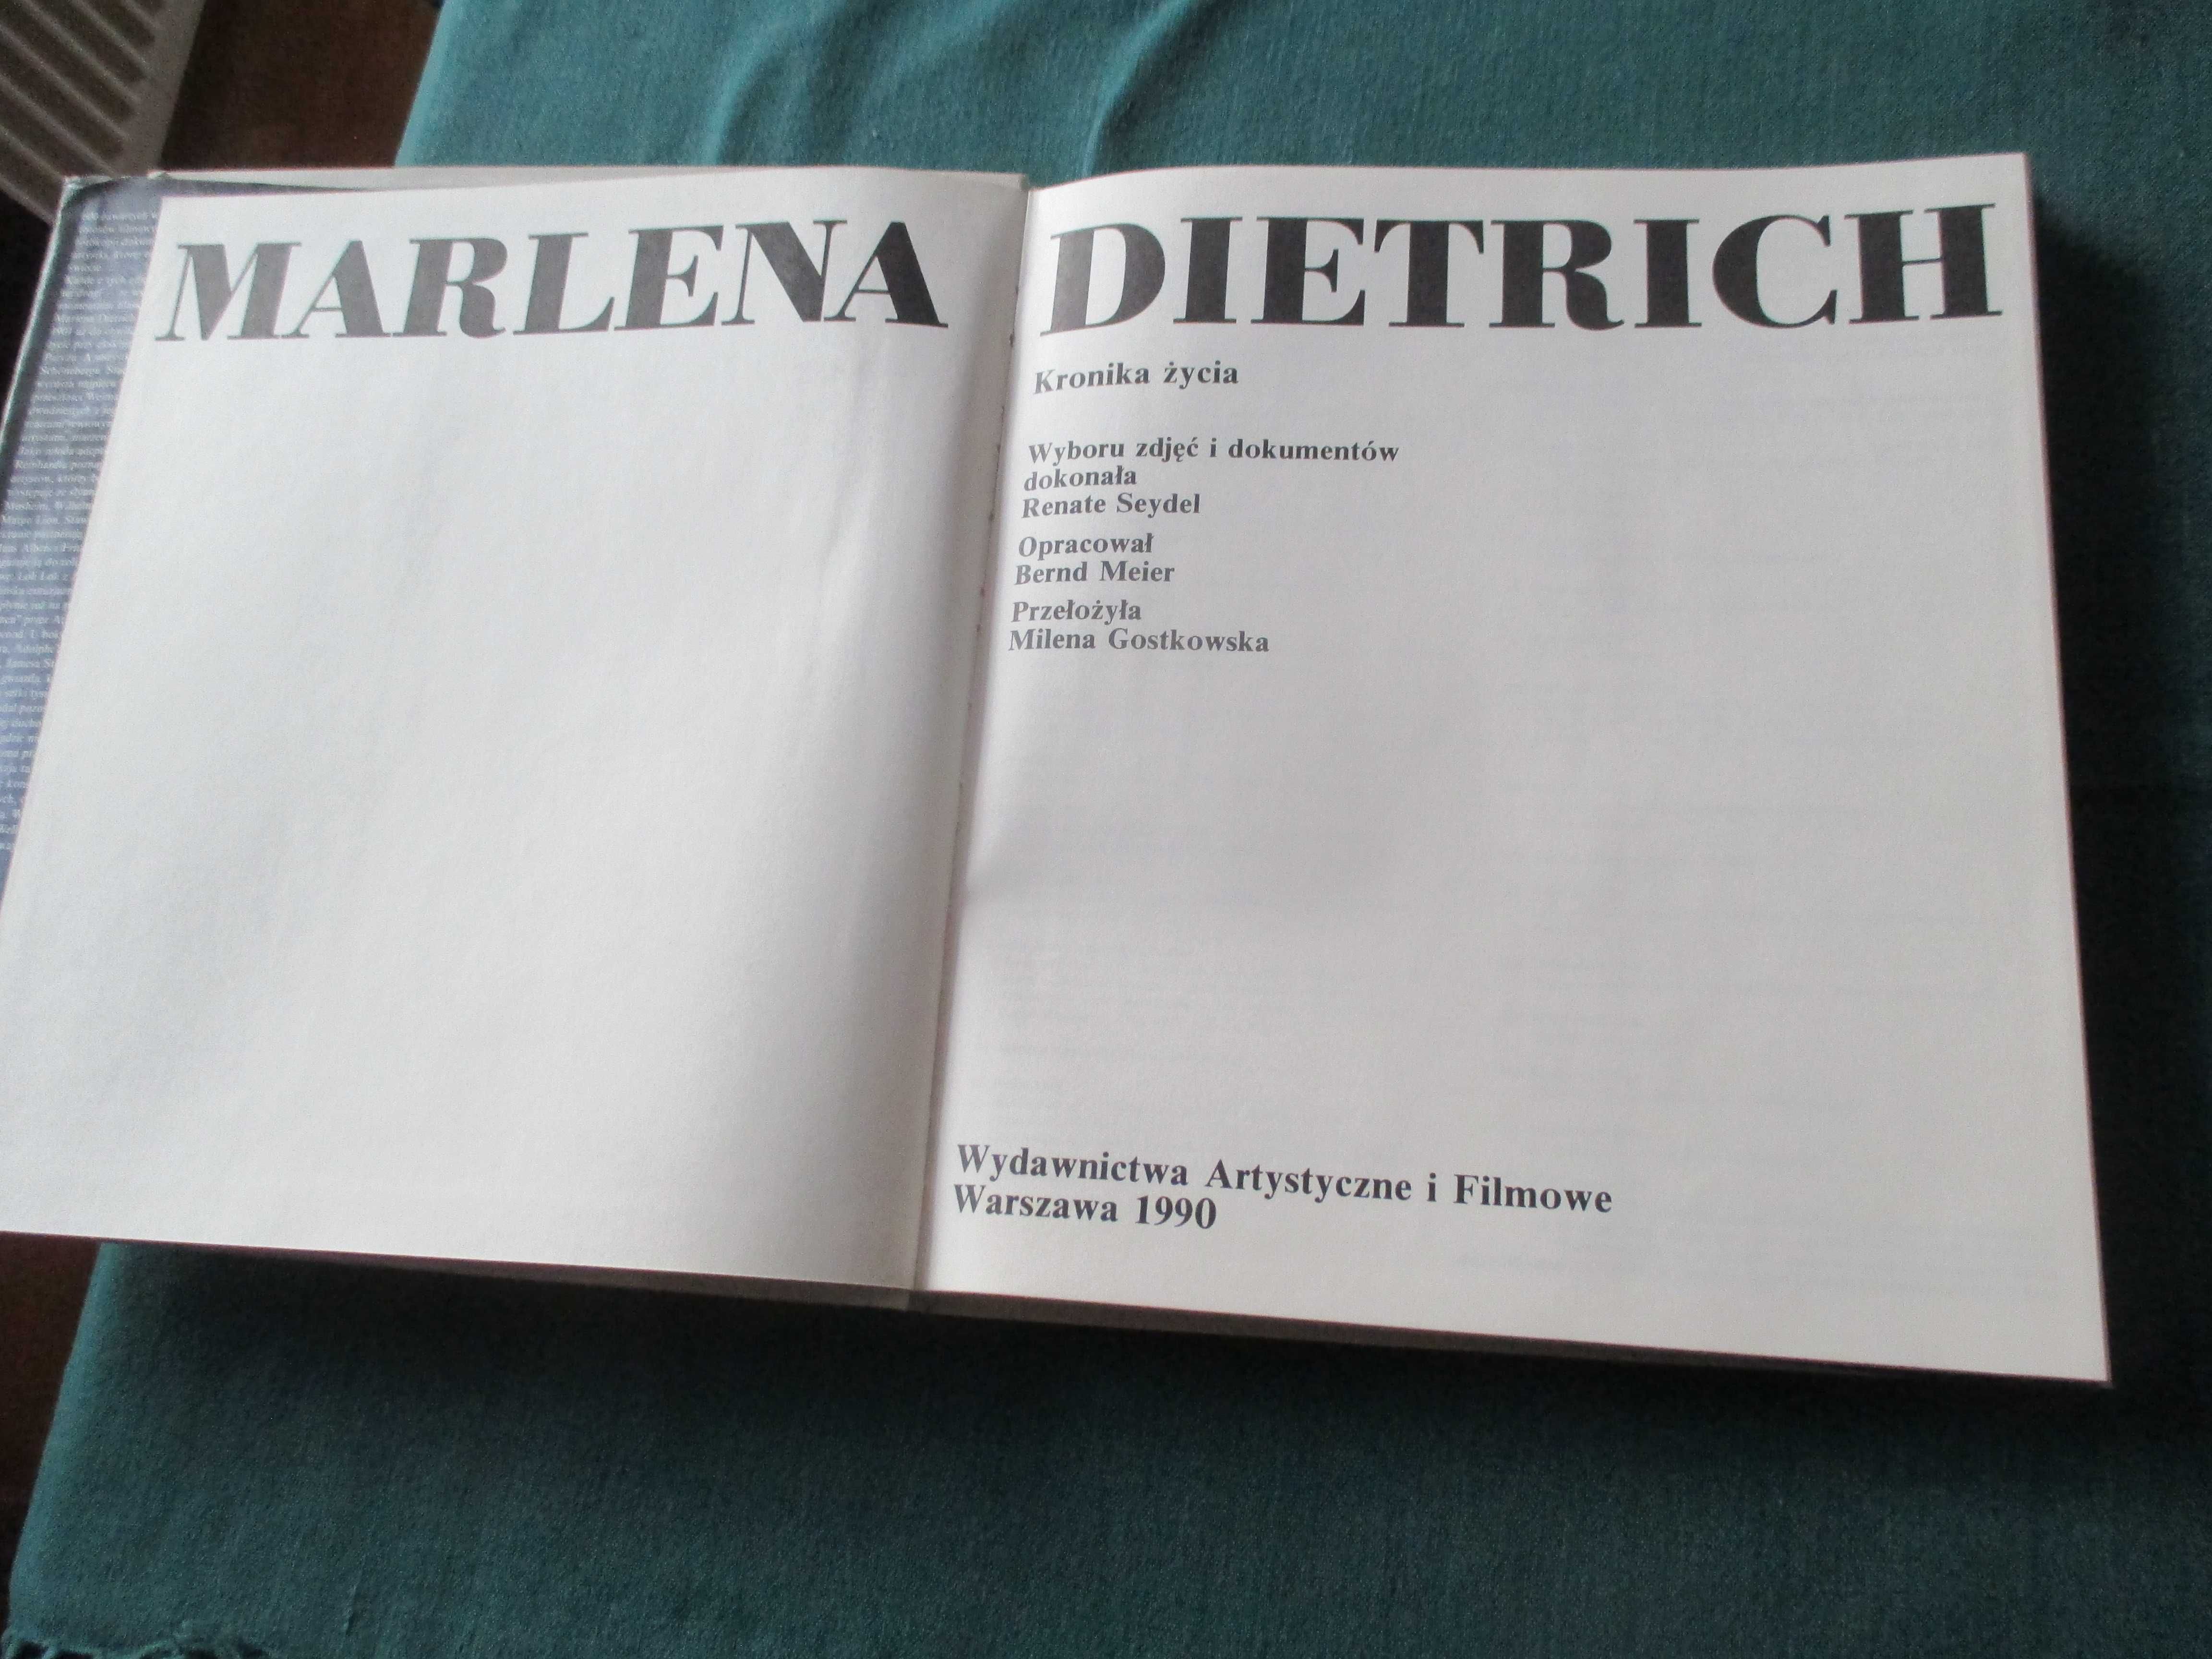 Marlena Dietrich